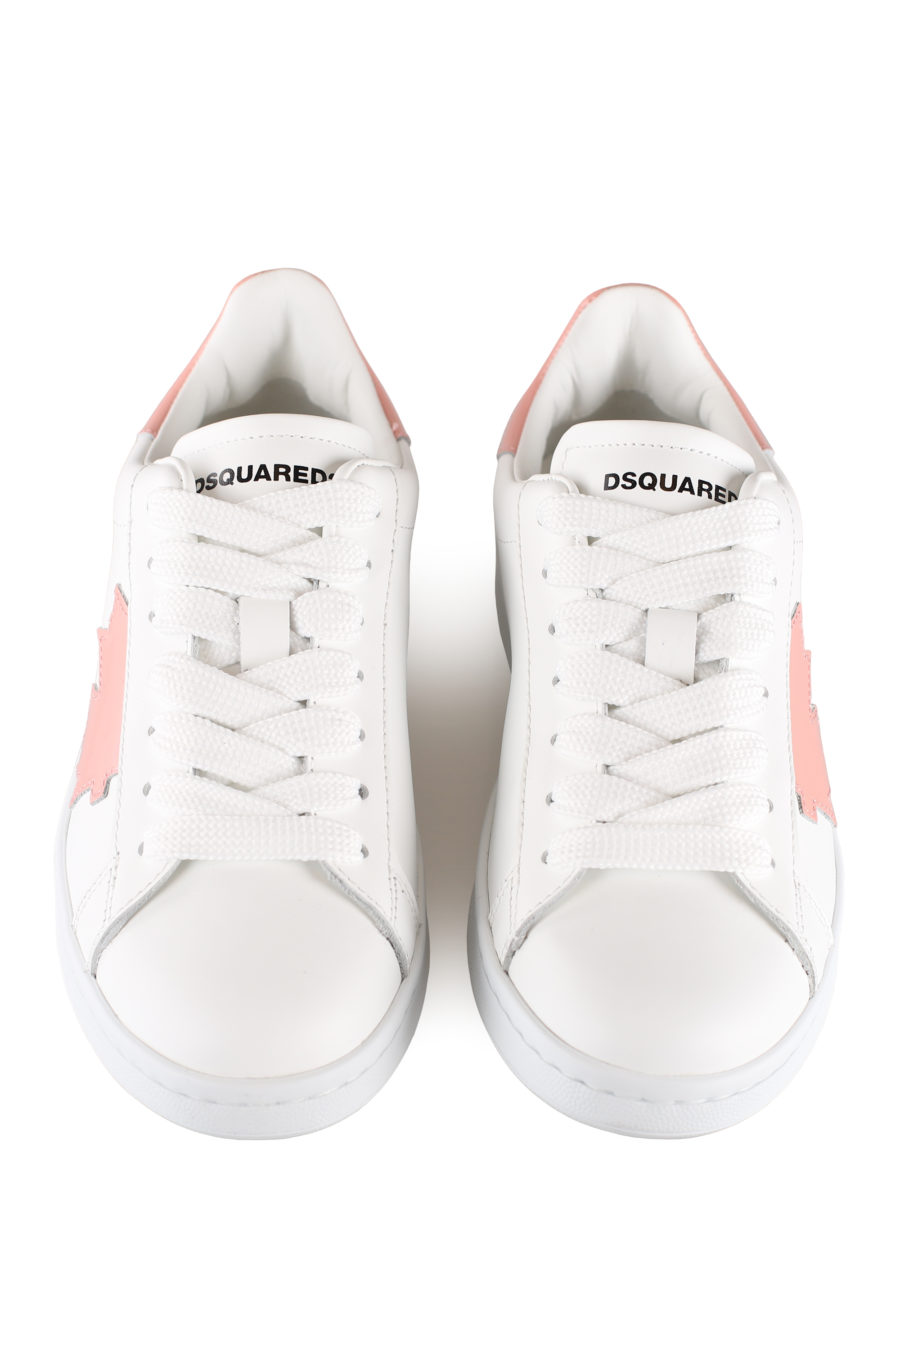 Zapatillas blancas con logo hoja rosa - IMG 0048